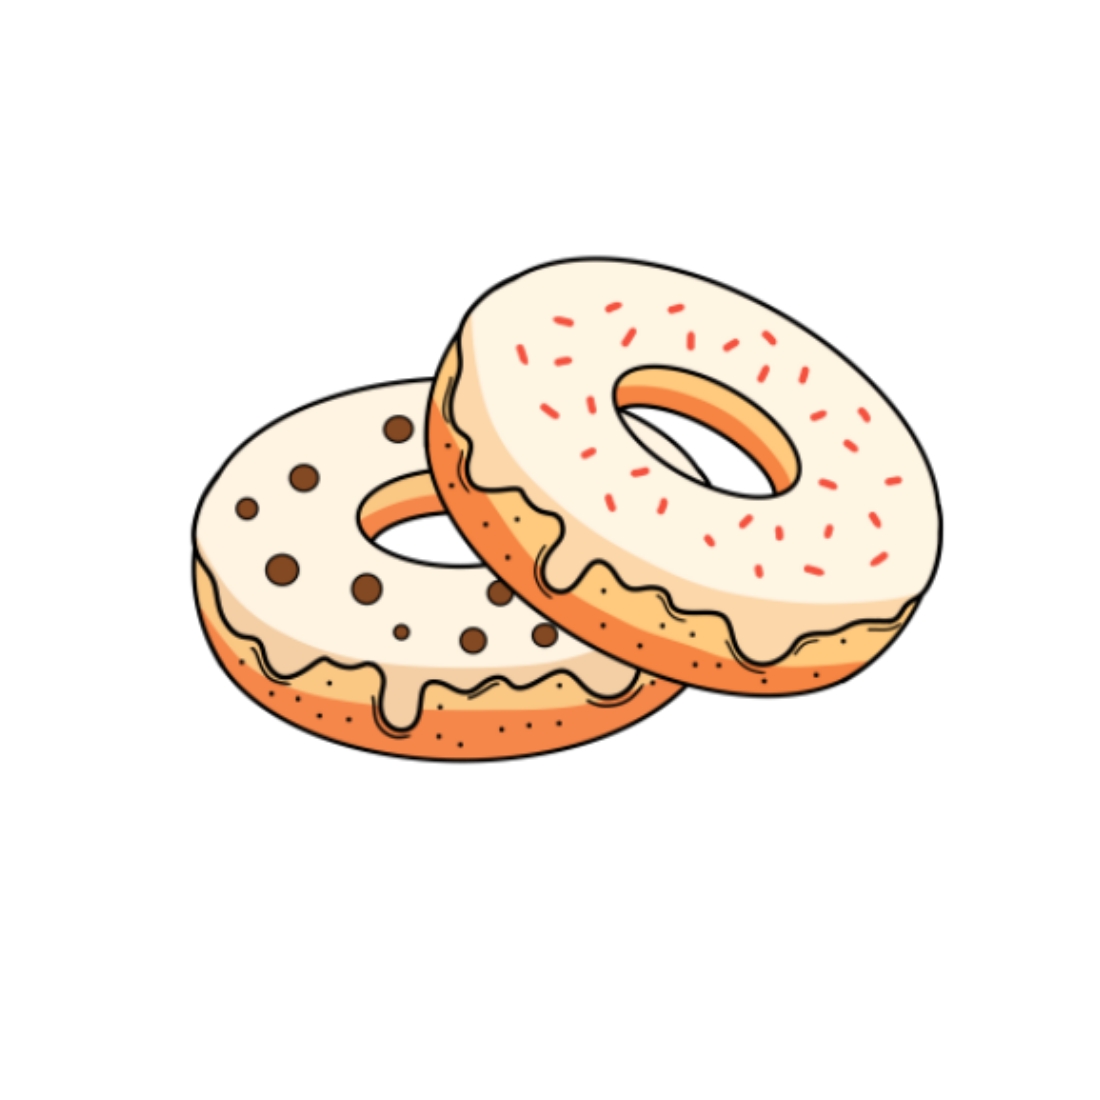 Donut illustration.